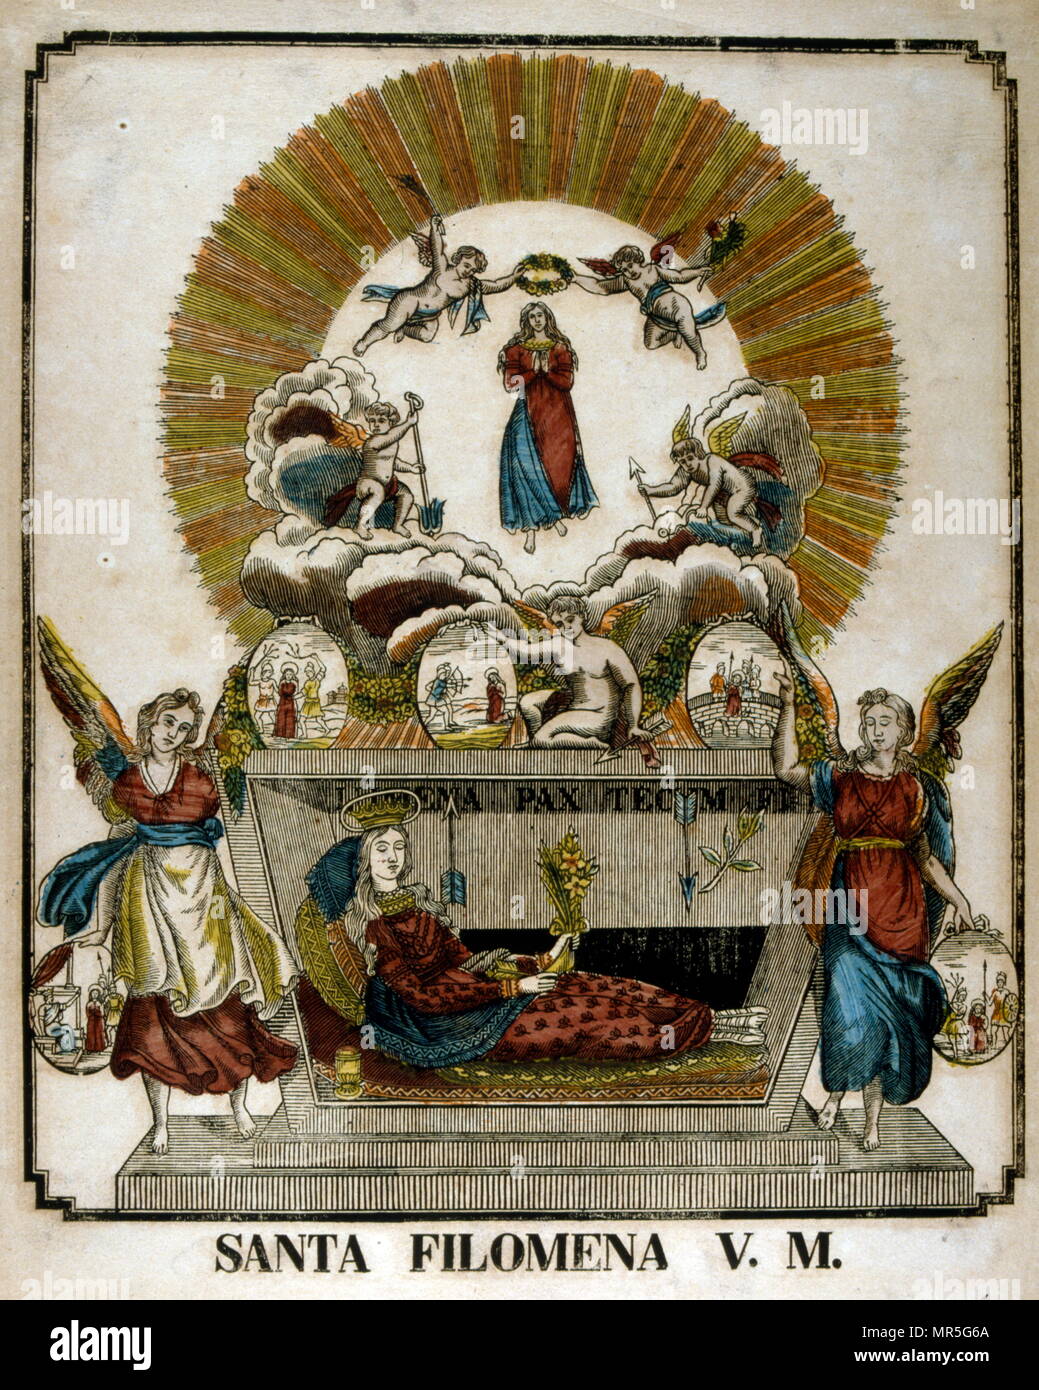 Illustration du xixe siècle français de Saint Philomena une jeune vierge consacrée, dont les restes ont été découverts sur le 1802 24/25 mai des catacombes de Priscille. Banque D'Images